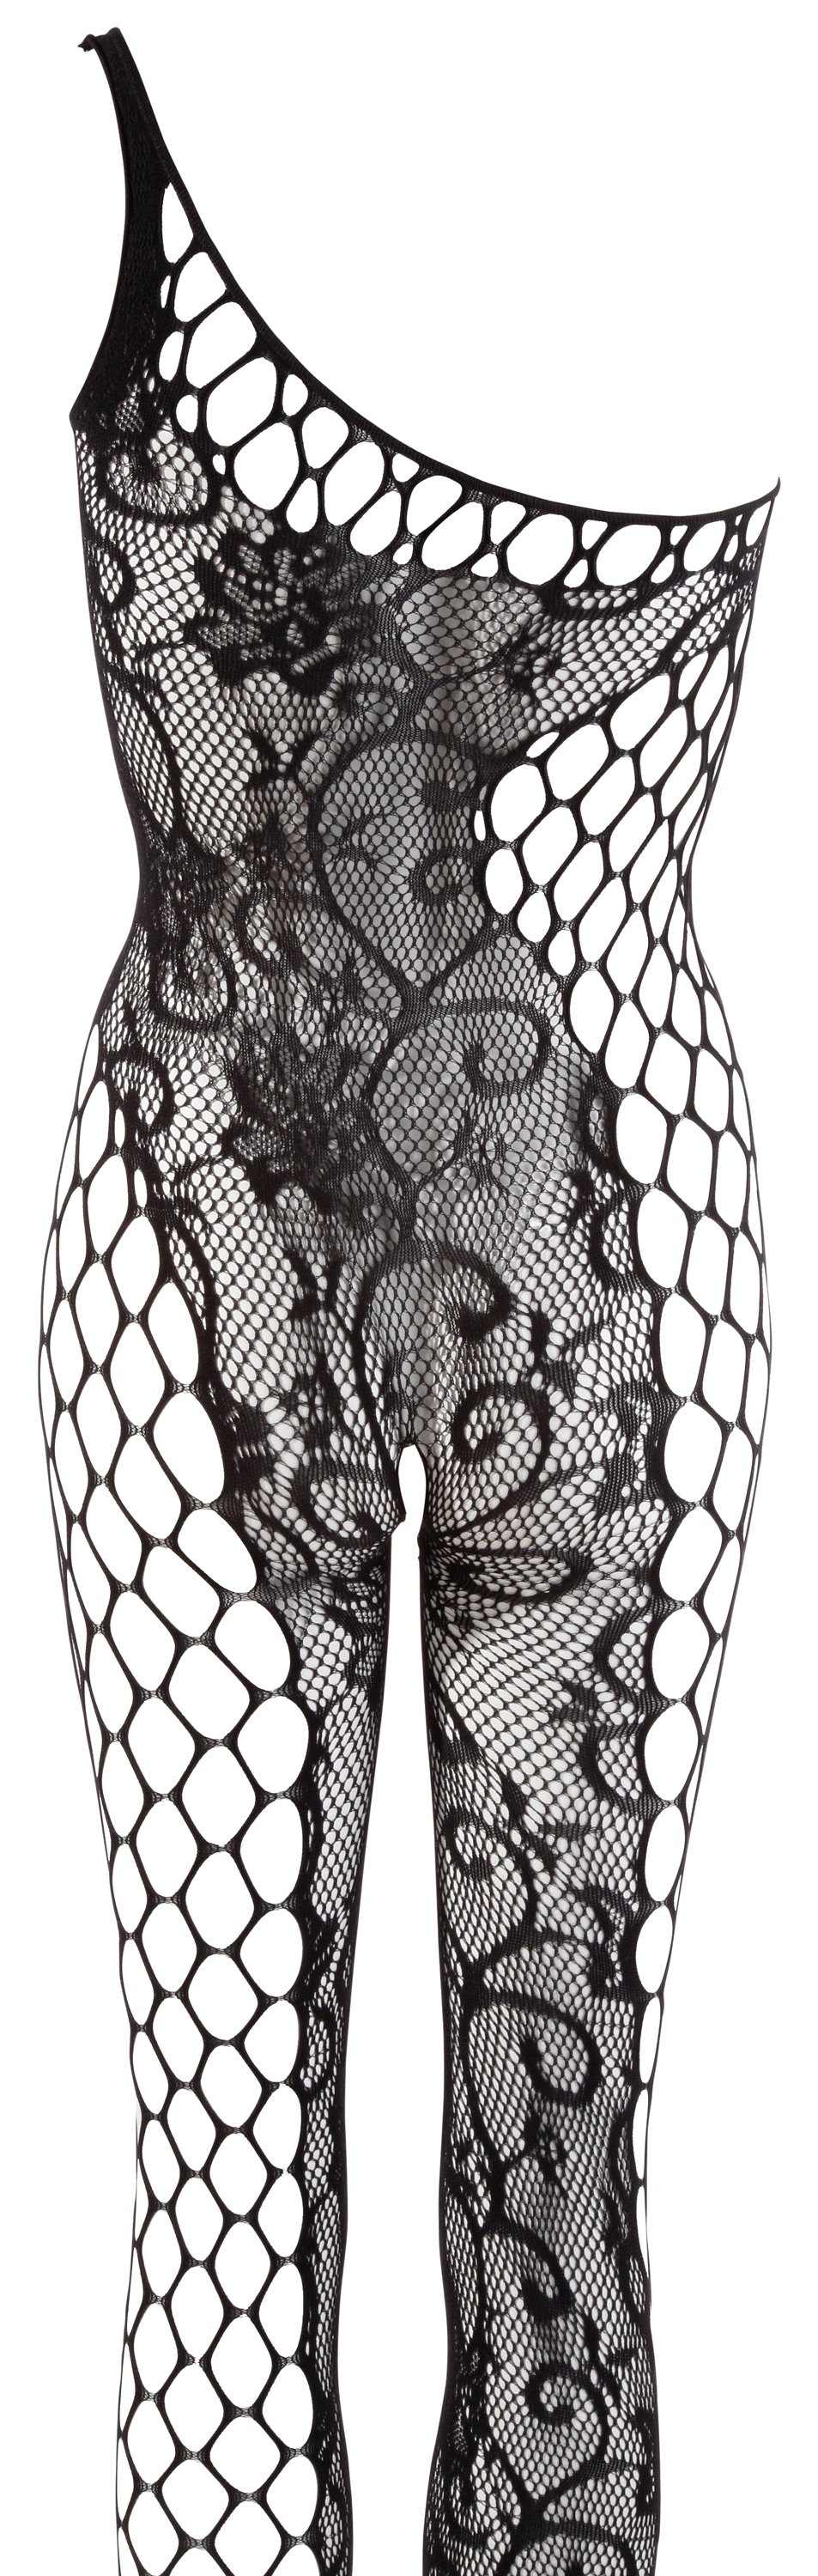 Virágmintás aszimmetrikus overall Erotikus necc ruha, overall, cicaruha kép